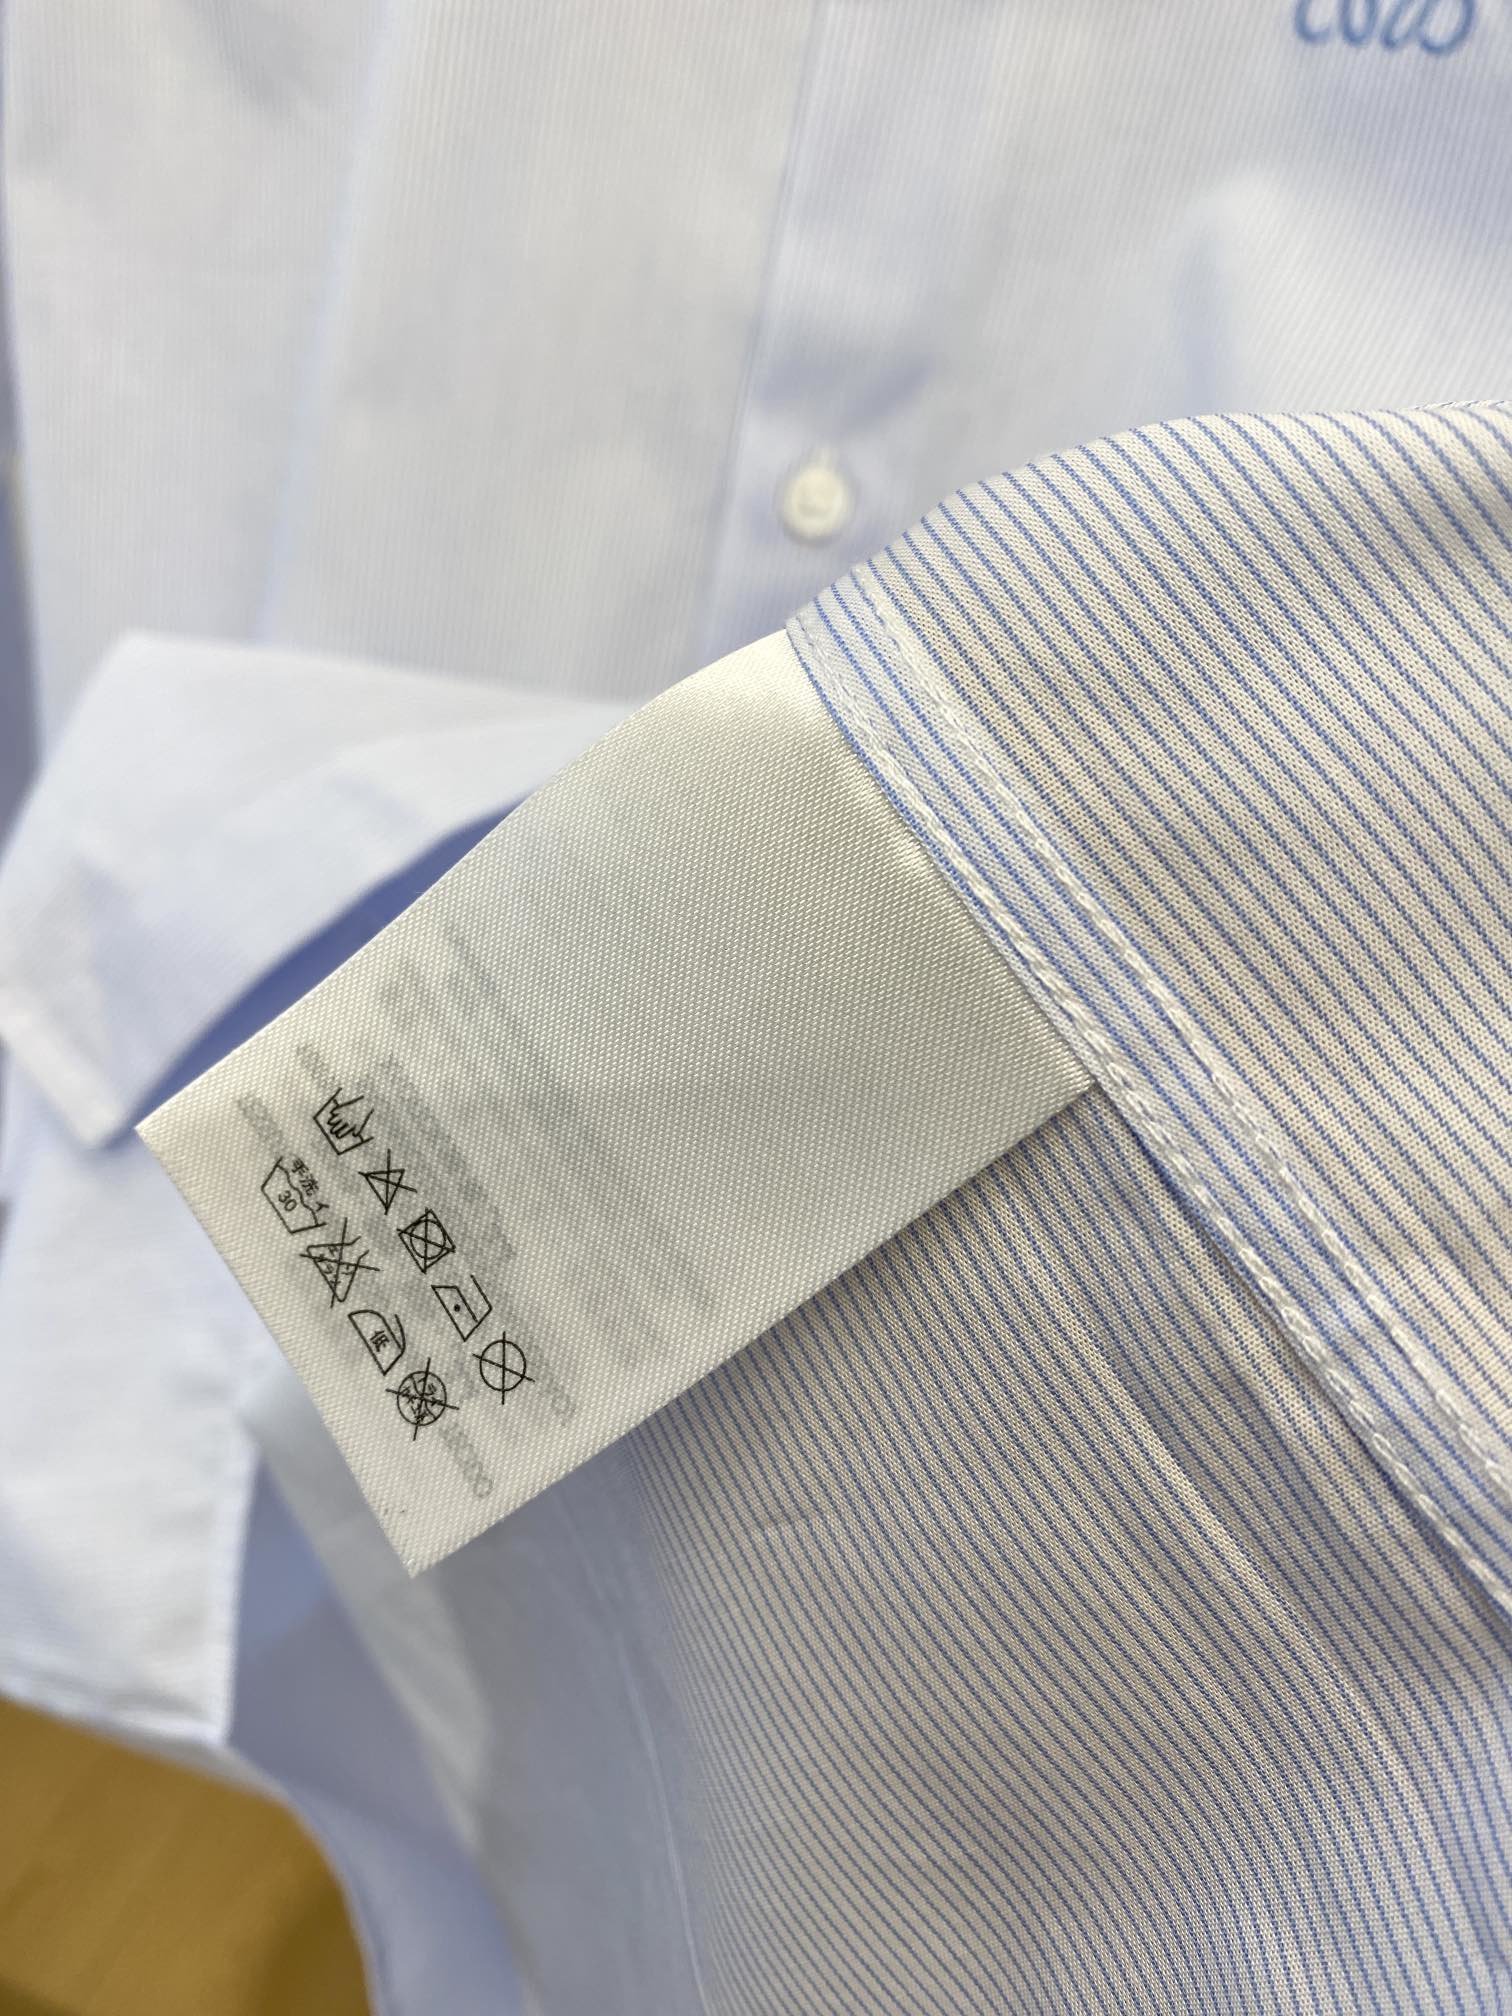 罗意威2024新款衬衫打造时装艺术感立体剪裁修身版型上身效果很帅气微彰显品位整体细节可以对比效果非常有型